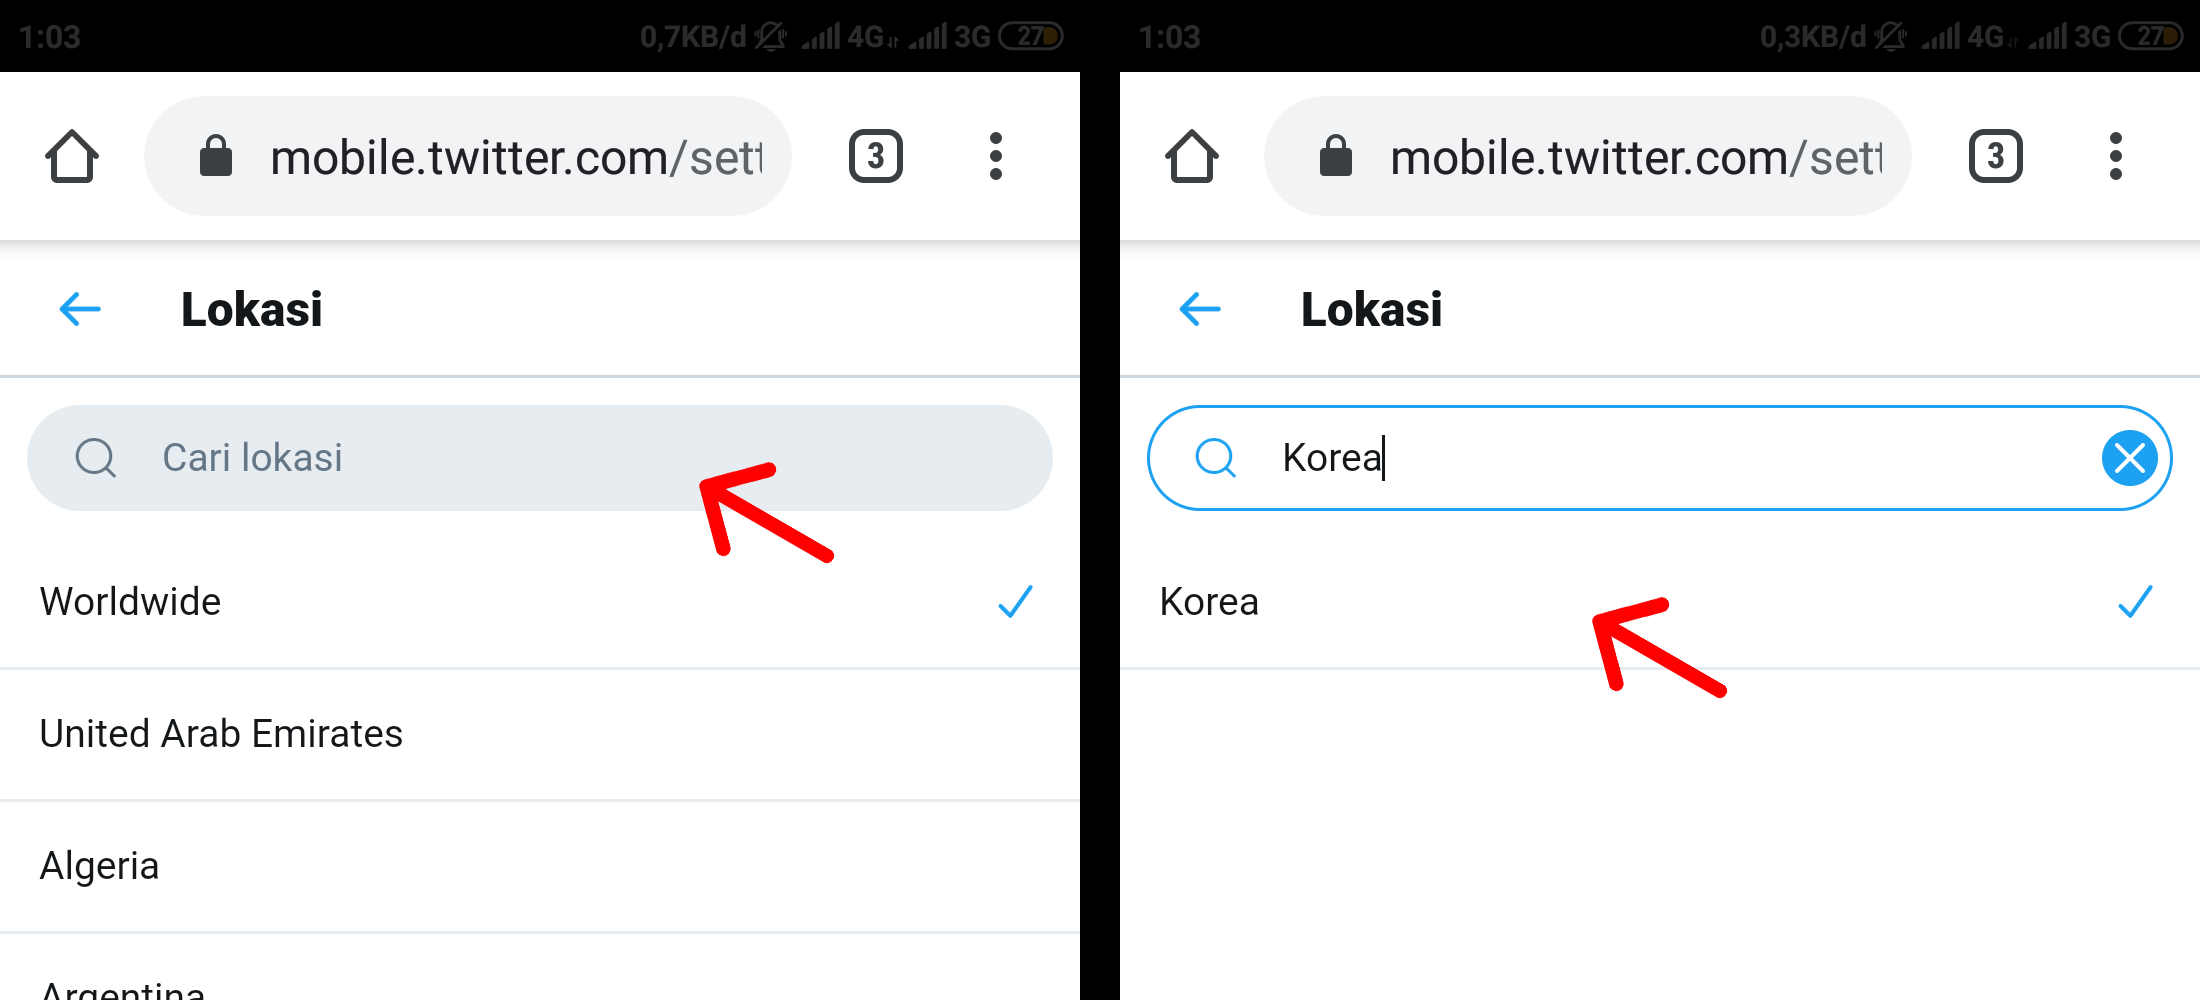 Cara Mengubah Trending Topik Twitter di Android